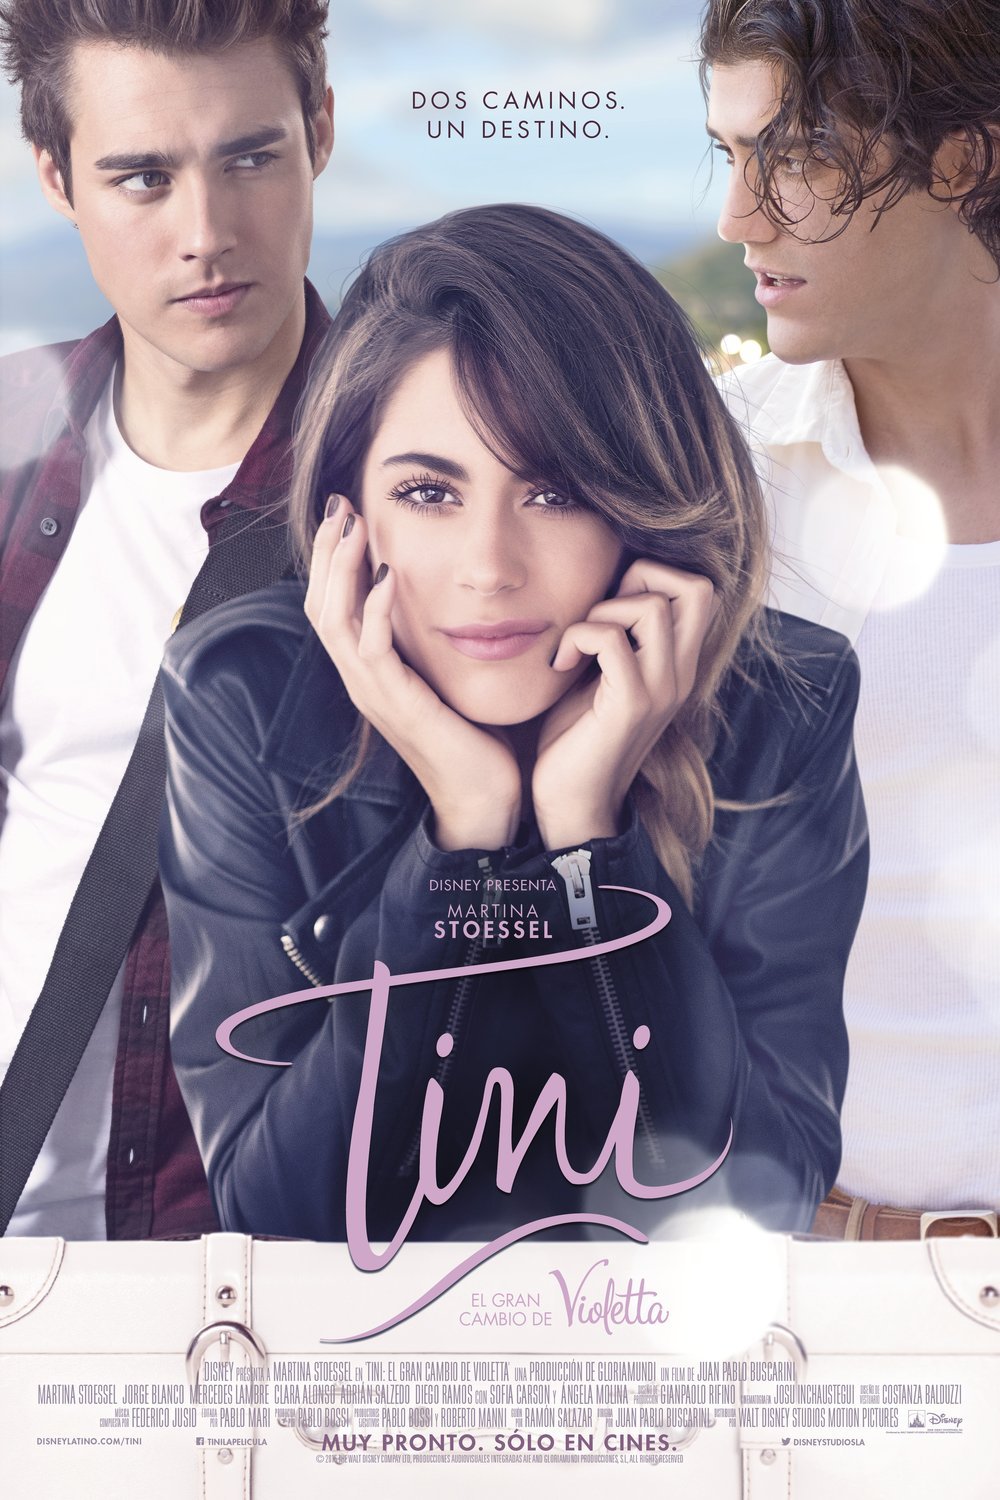 Spanish poster of the movie Tini: El gran cambio de Violetta